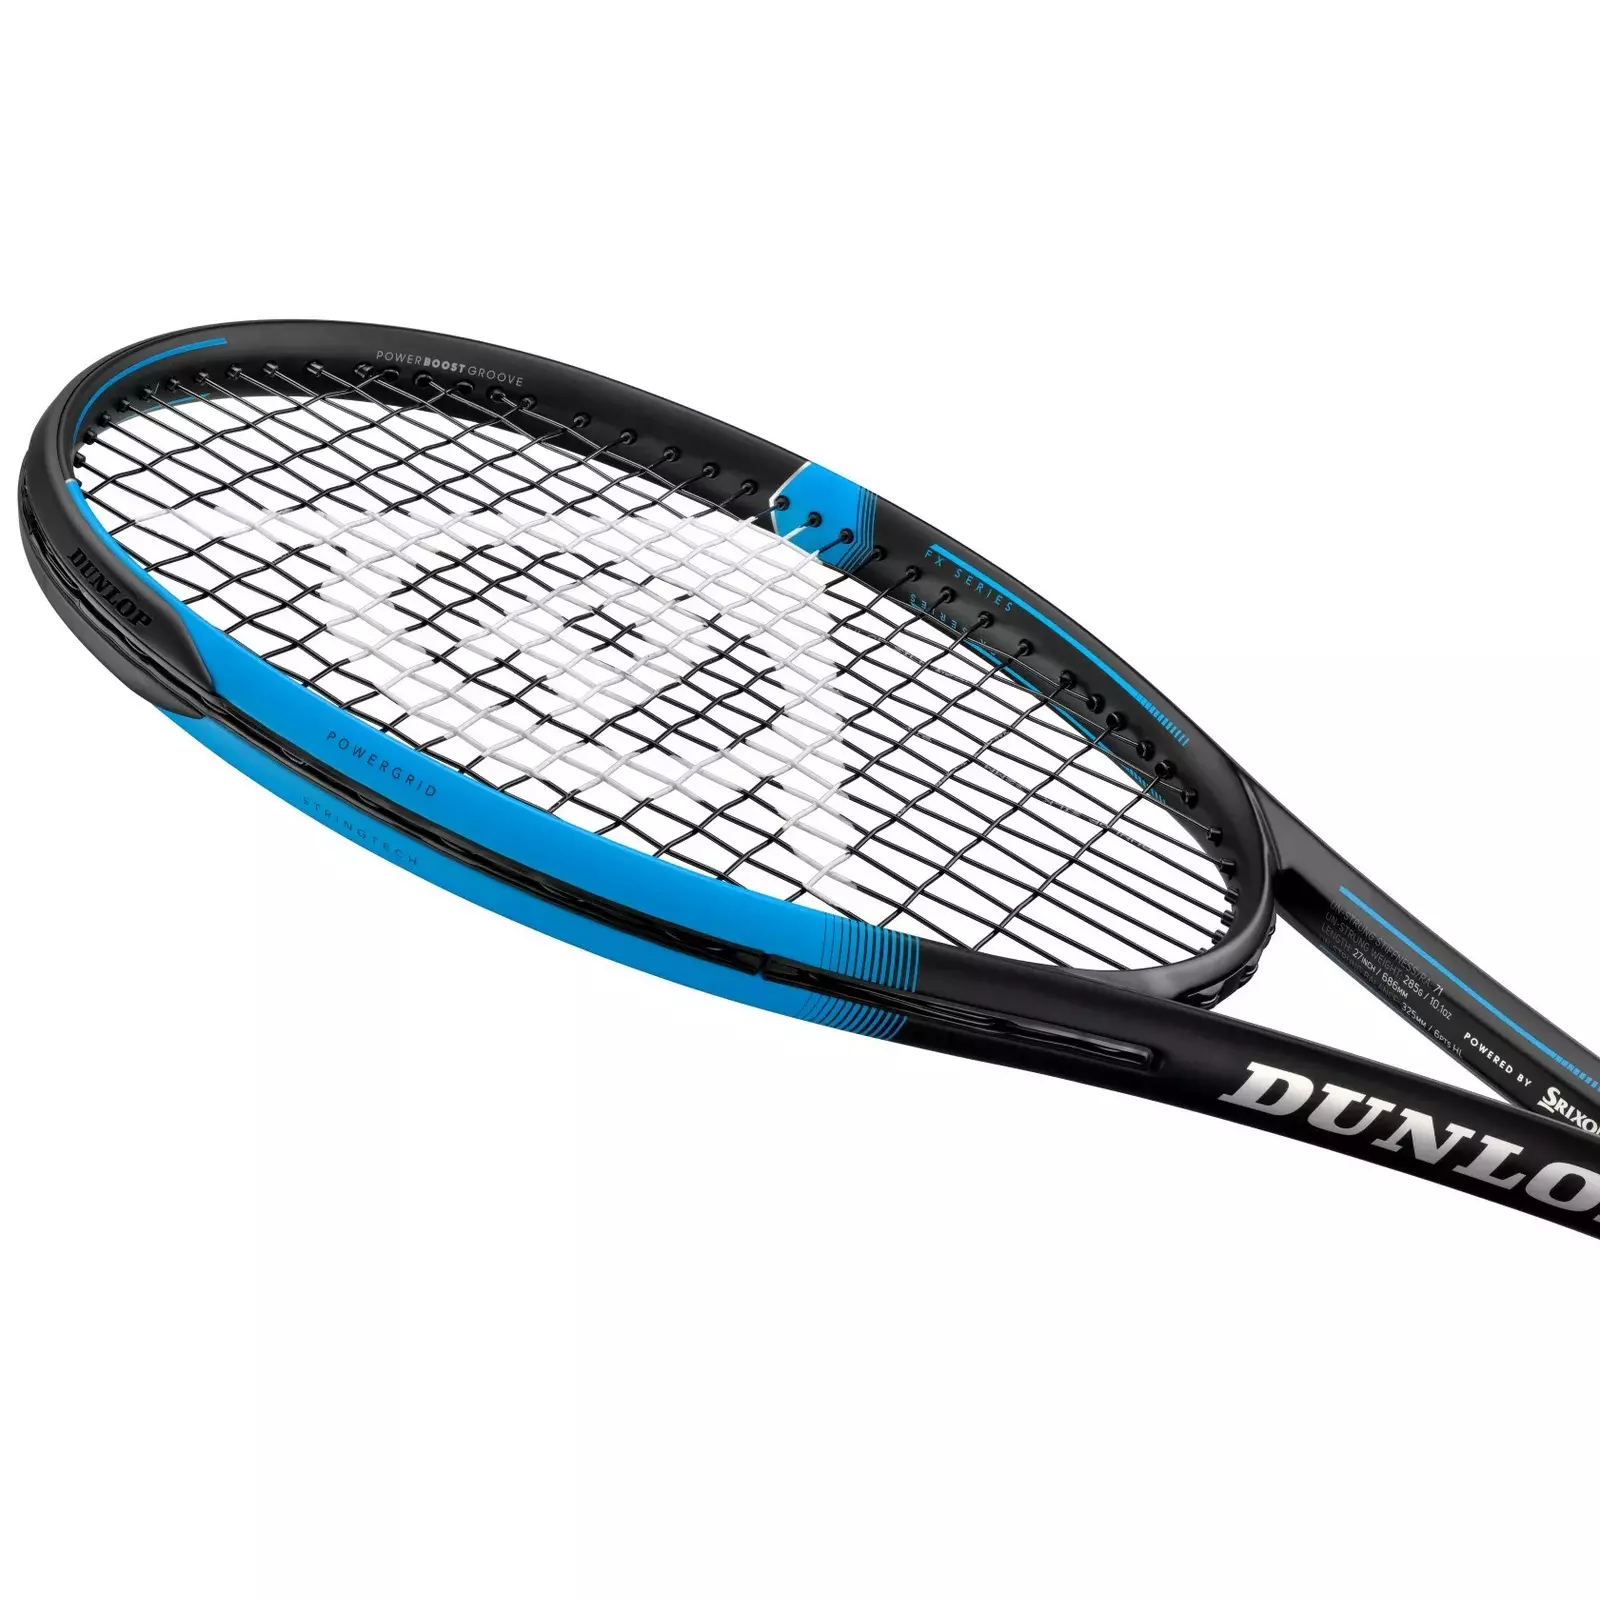 Tennis racket Dunlop FX500 LS 10306279 | Tennis goods | AiO.lv